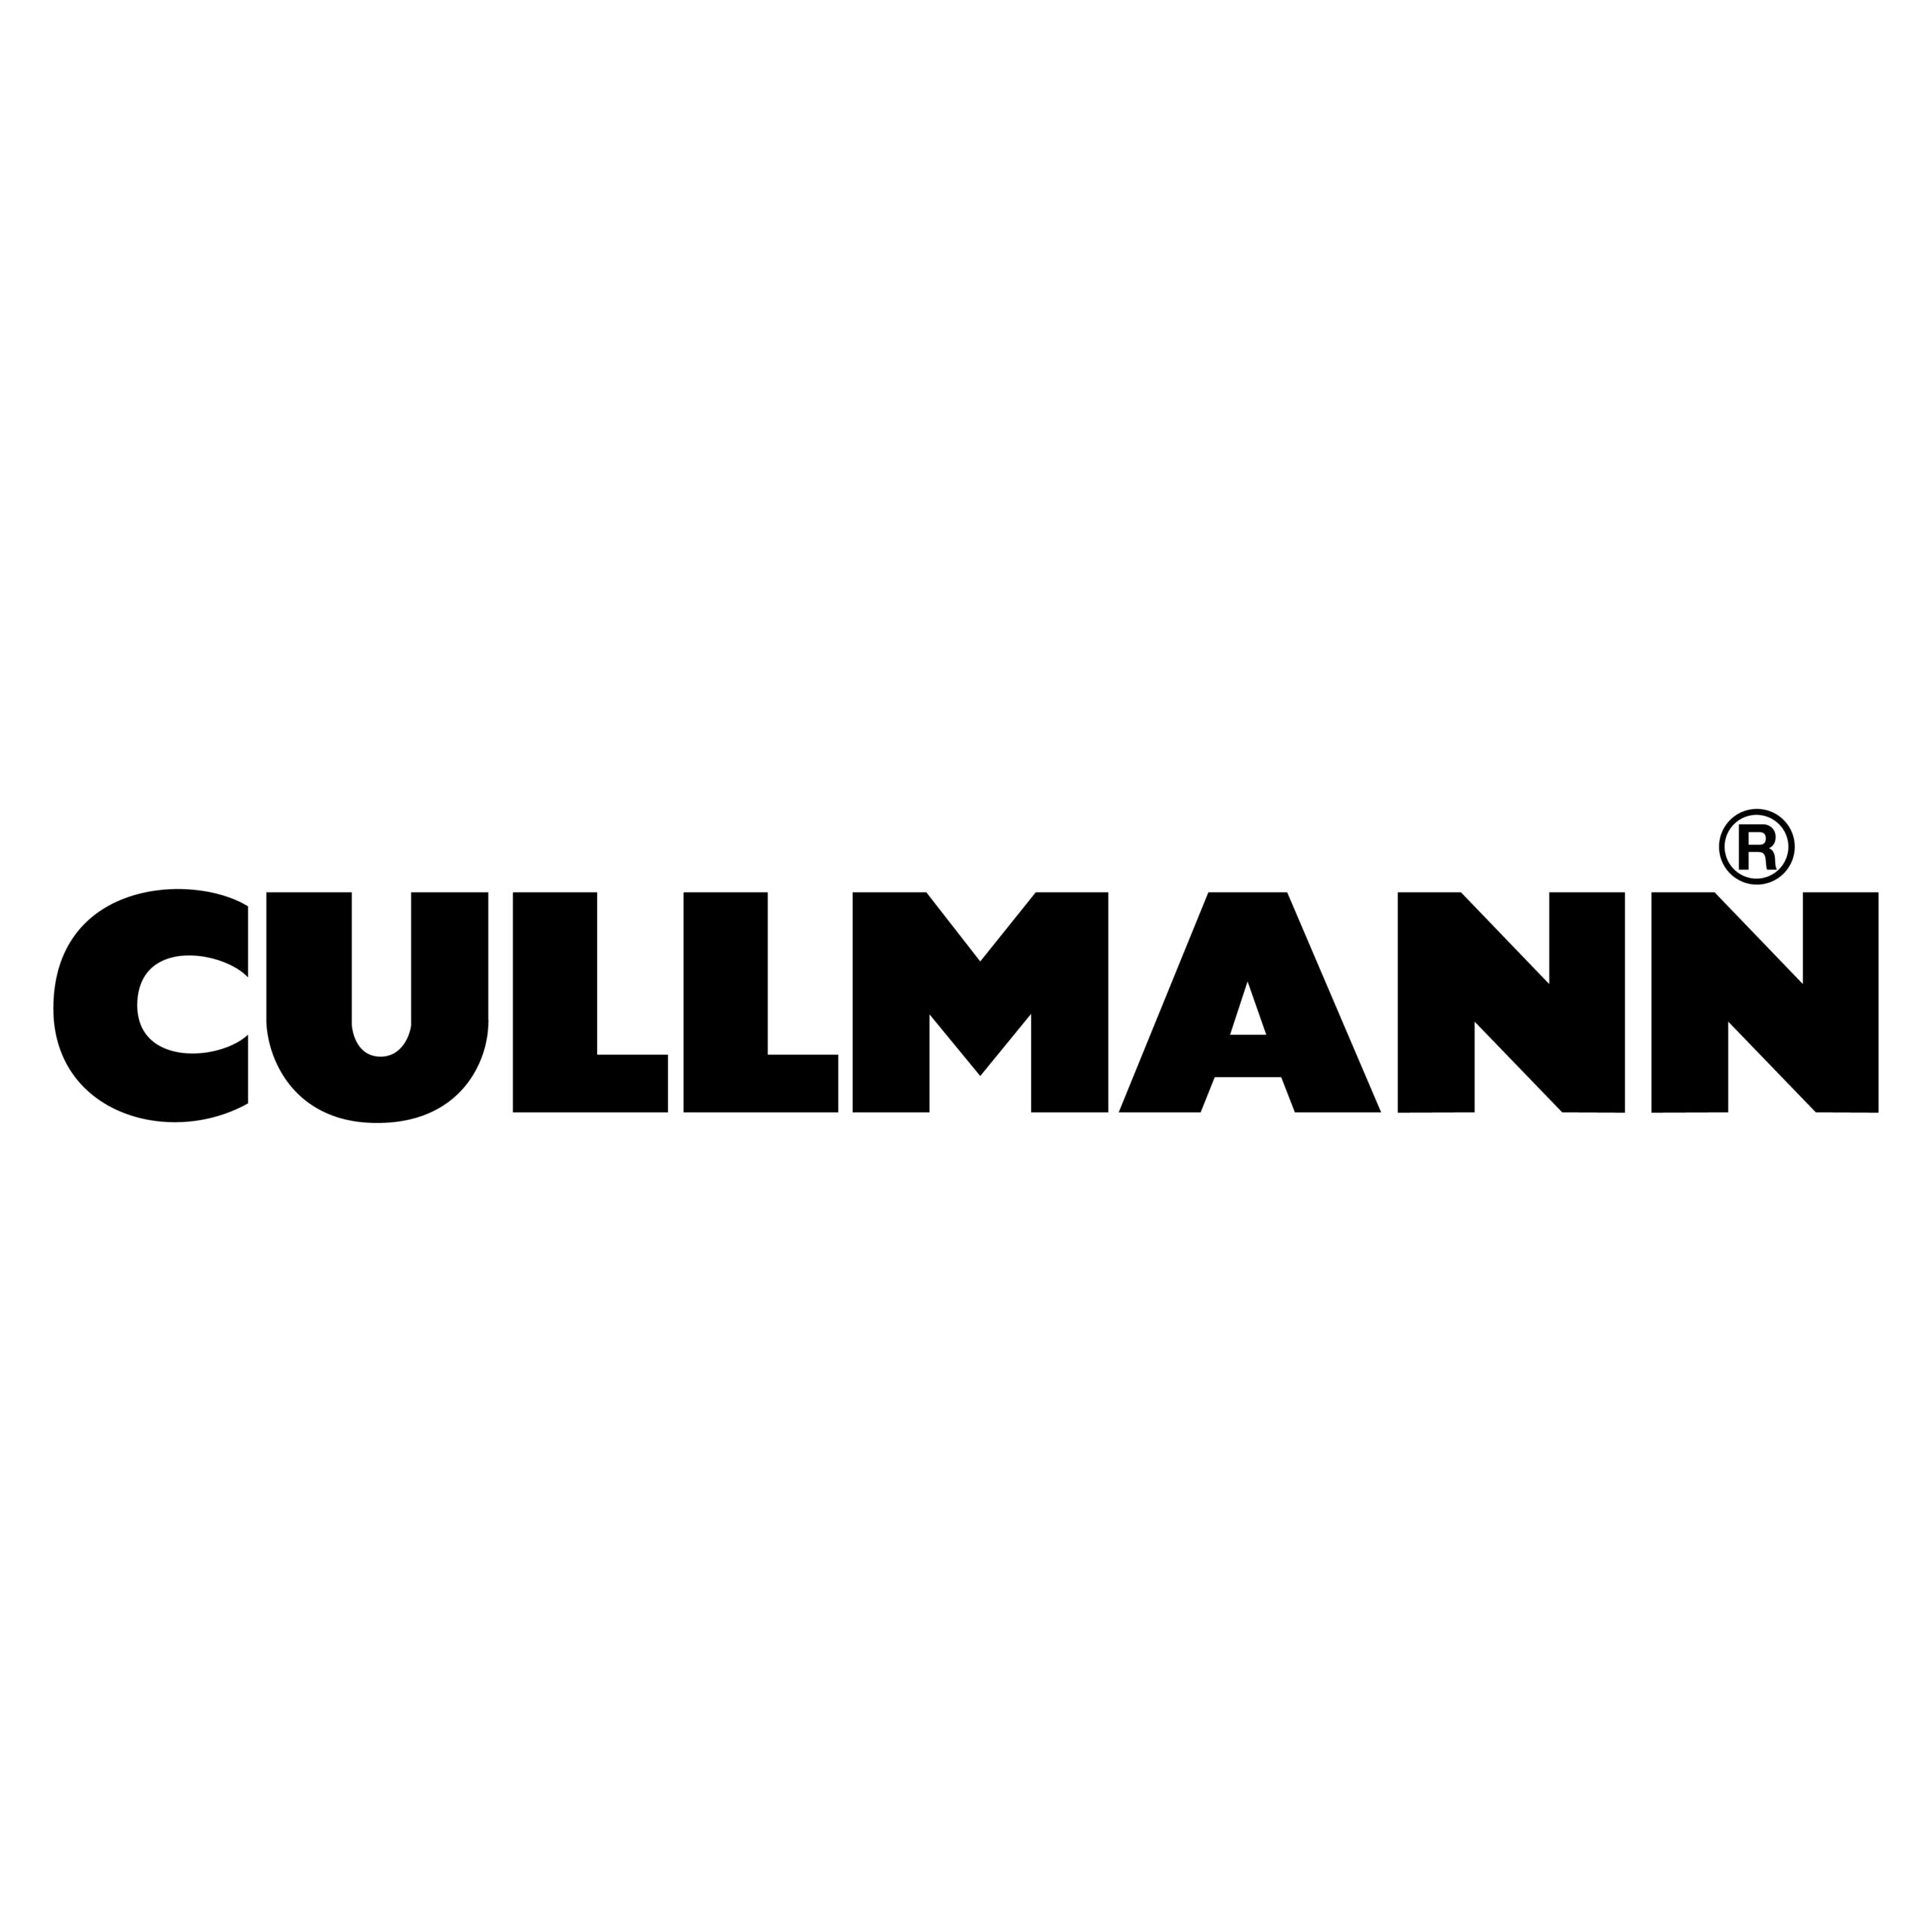 kunden-logos-cullmann